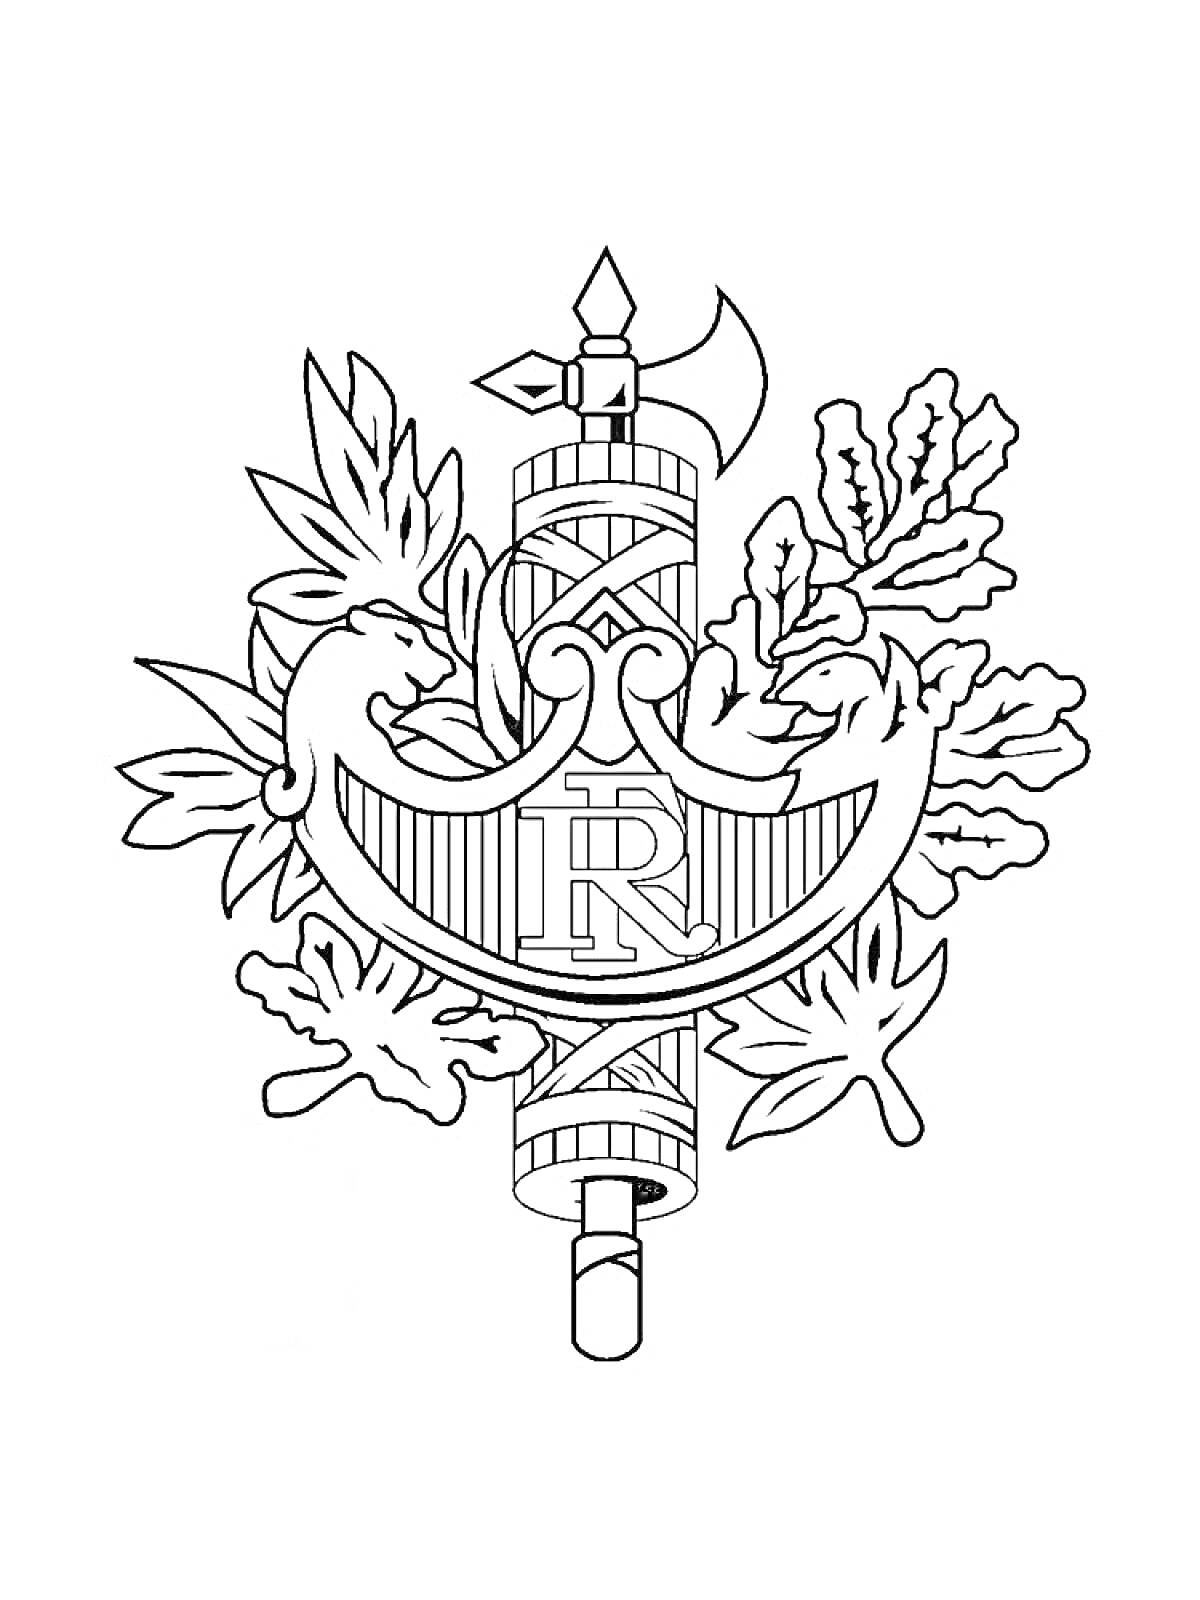 Герб с секирой, фасциями, лавровыми и дубовыми листьями, а также буквами 